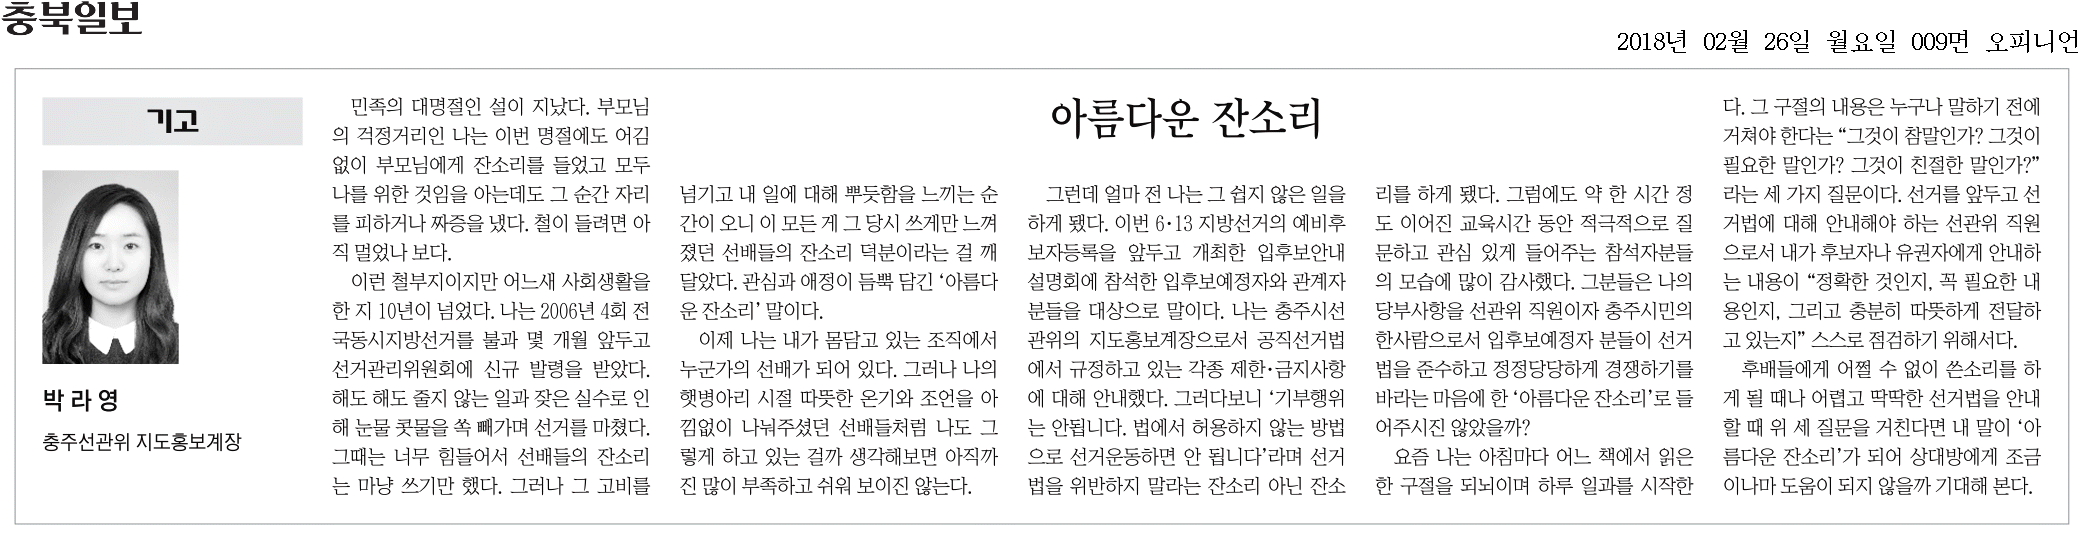 충북일보에 게재된 기고문-아름다운 잔소리